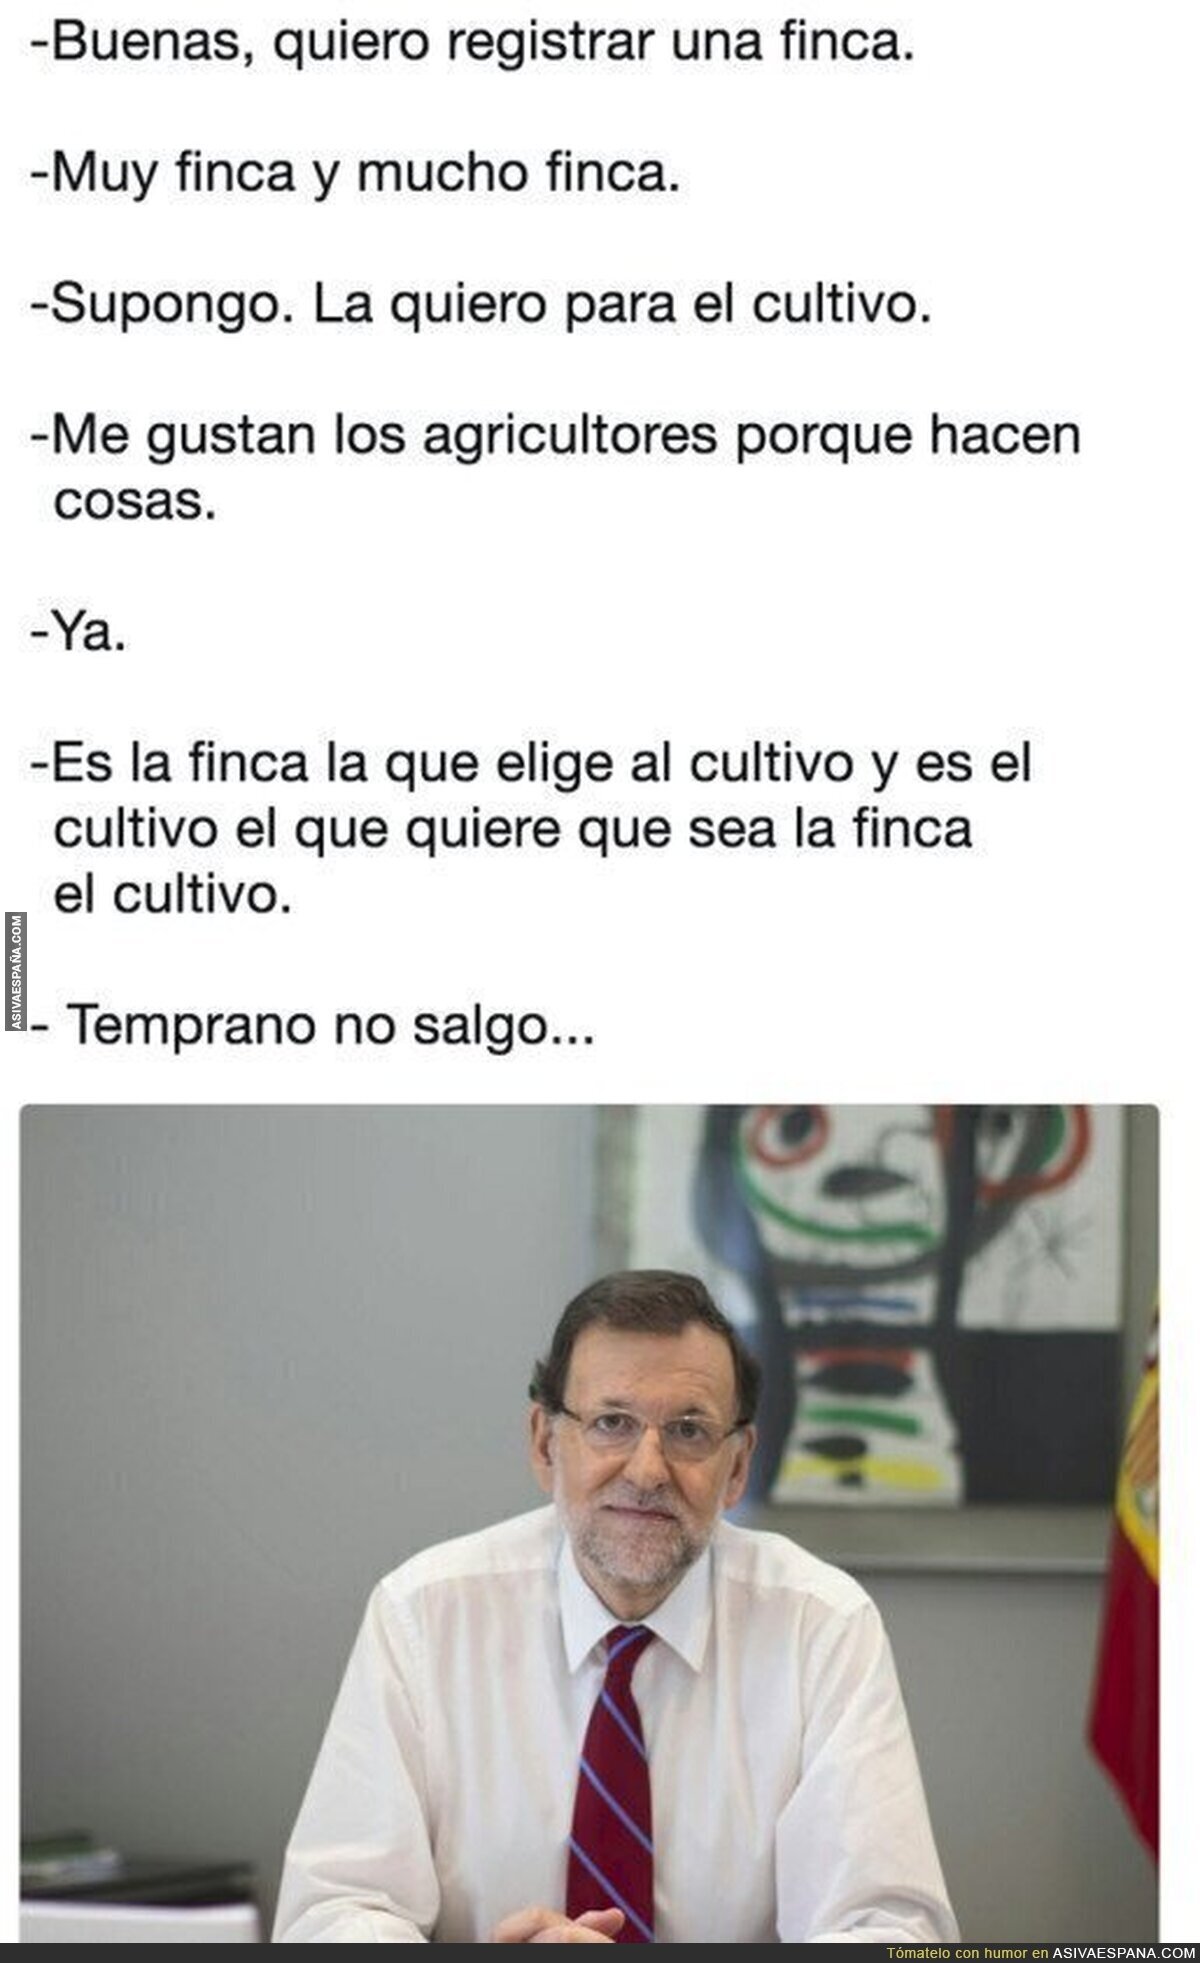 Mariano Rajoy en su nuevo empleo como registrador de la propiedad